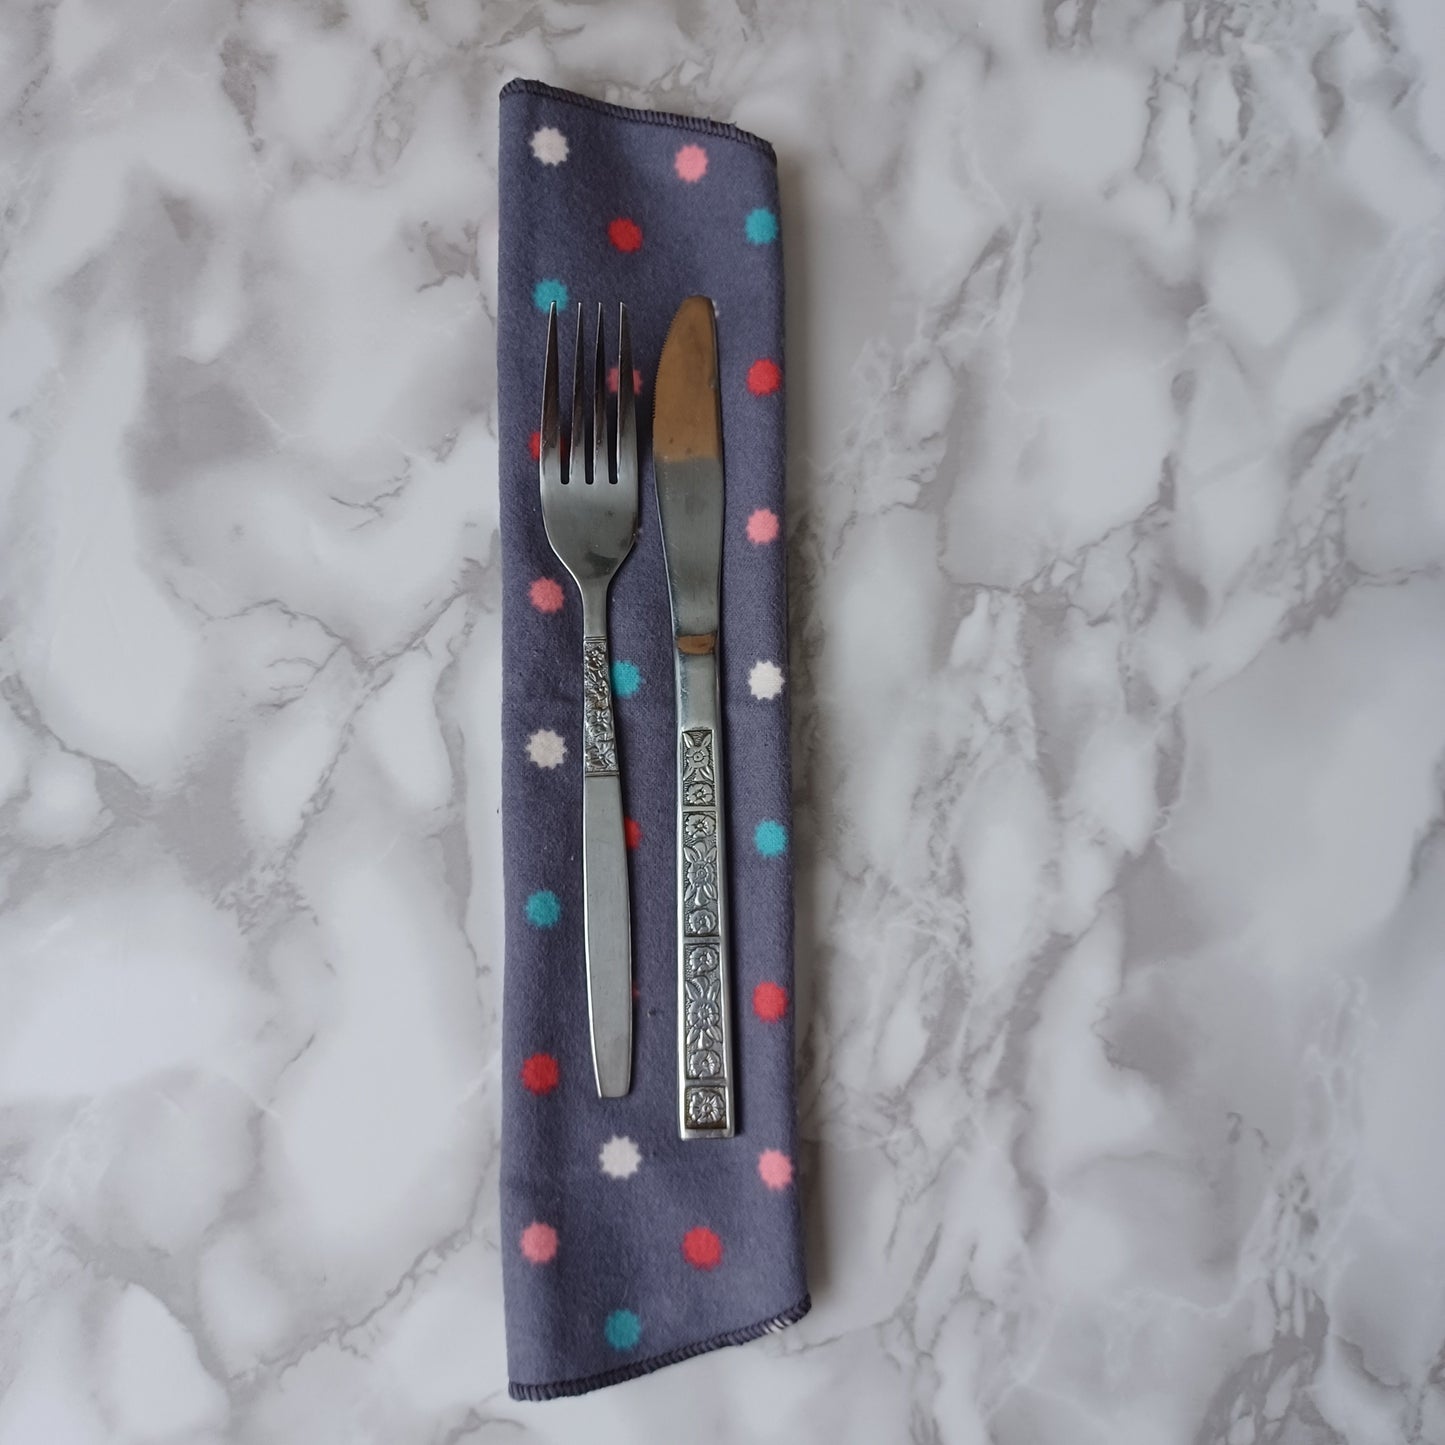 Serviettes de table et Essuie-tout-Gris moyen avec picots colorés/Napkins and Paperless towels-Medium Gray with colored pins